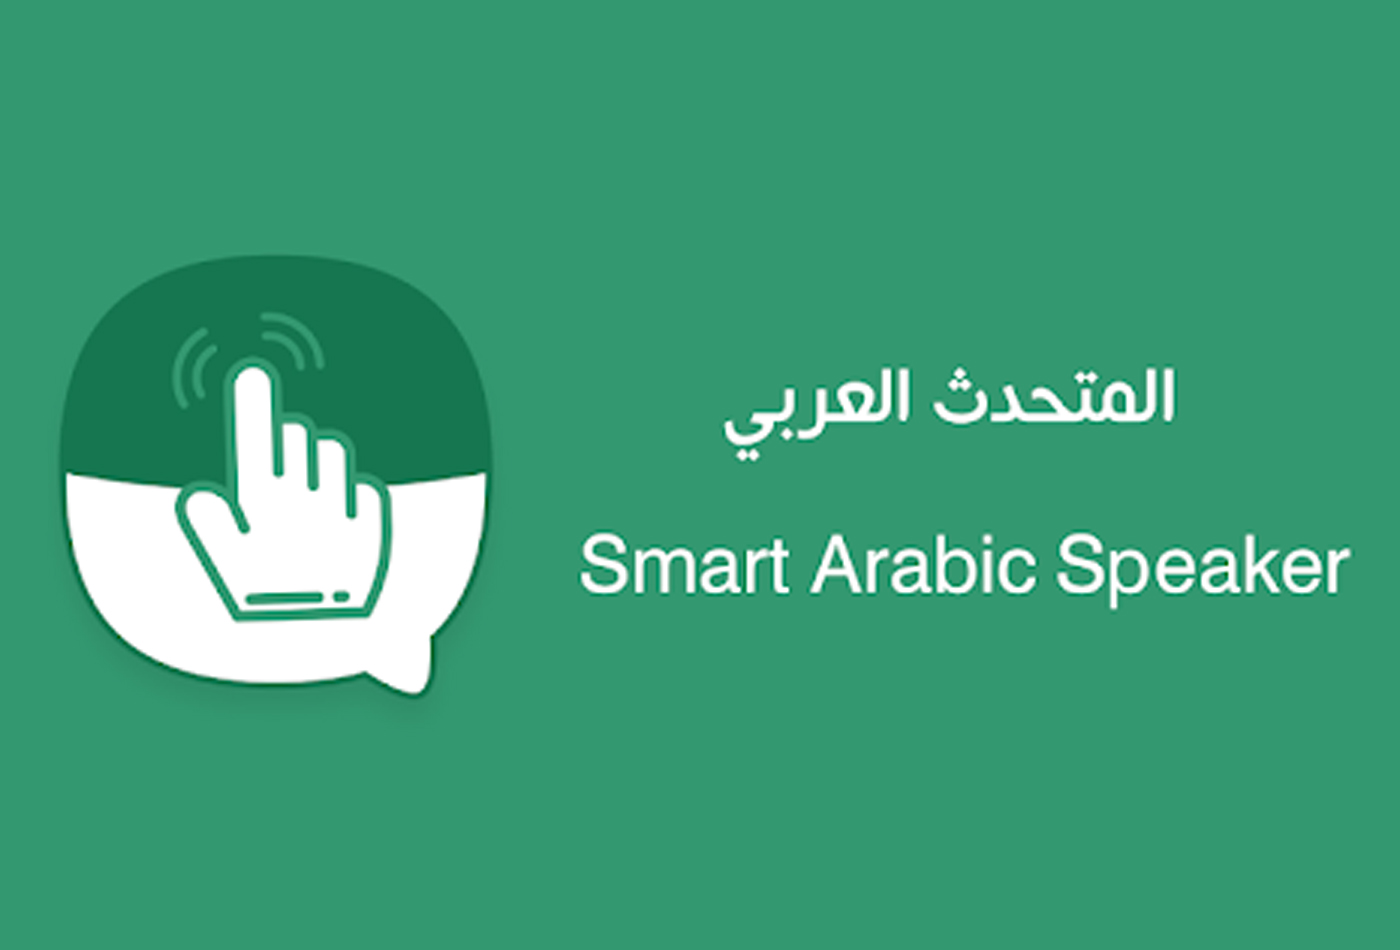 المتحدث العربي الذكي